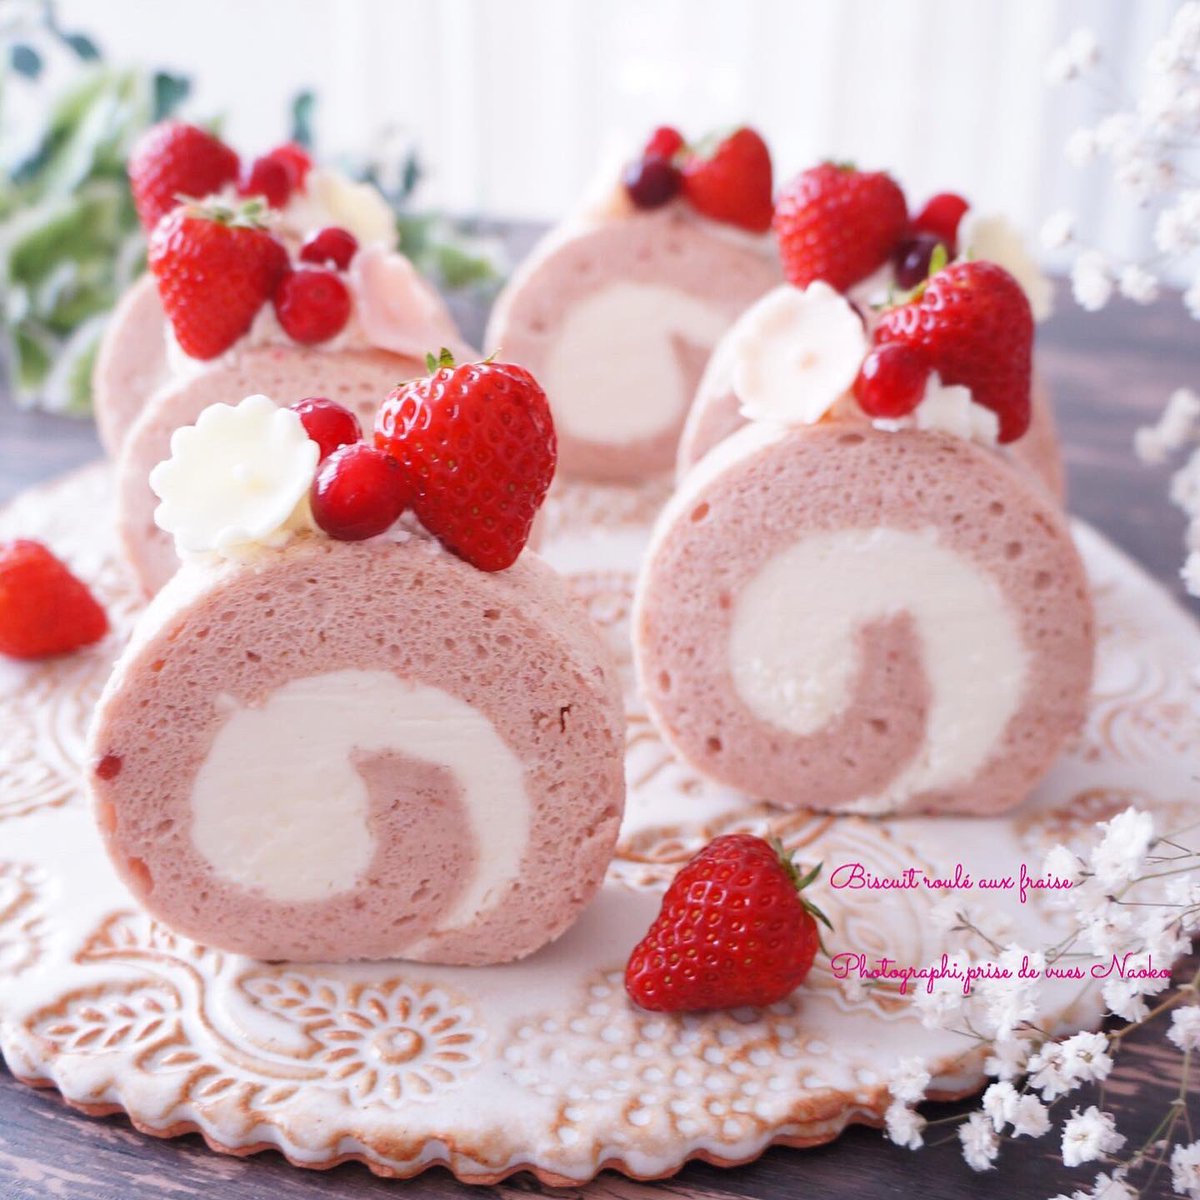 まつもと なおこ On Twitter ベビーピンクの苺のロールケーキ を作りました ロールケーキ 苺 いちご Cotta コッタ Tomiz おうちカフェ お菓子作り好きな人と繋がりたい